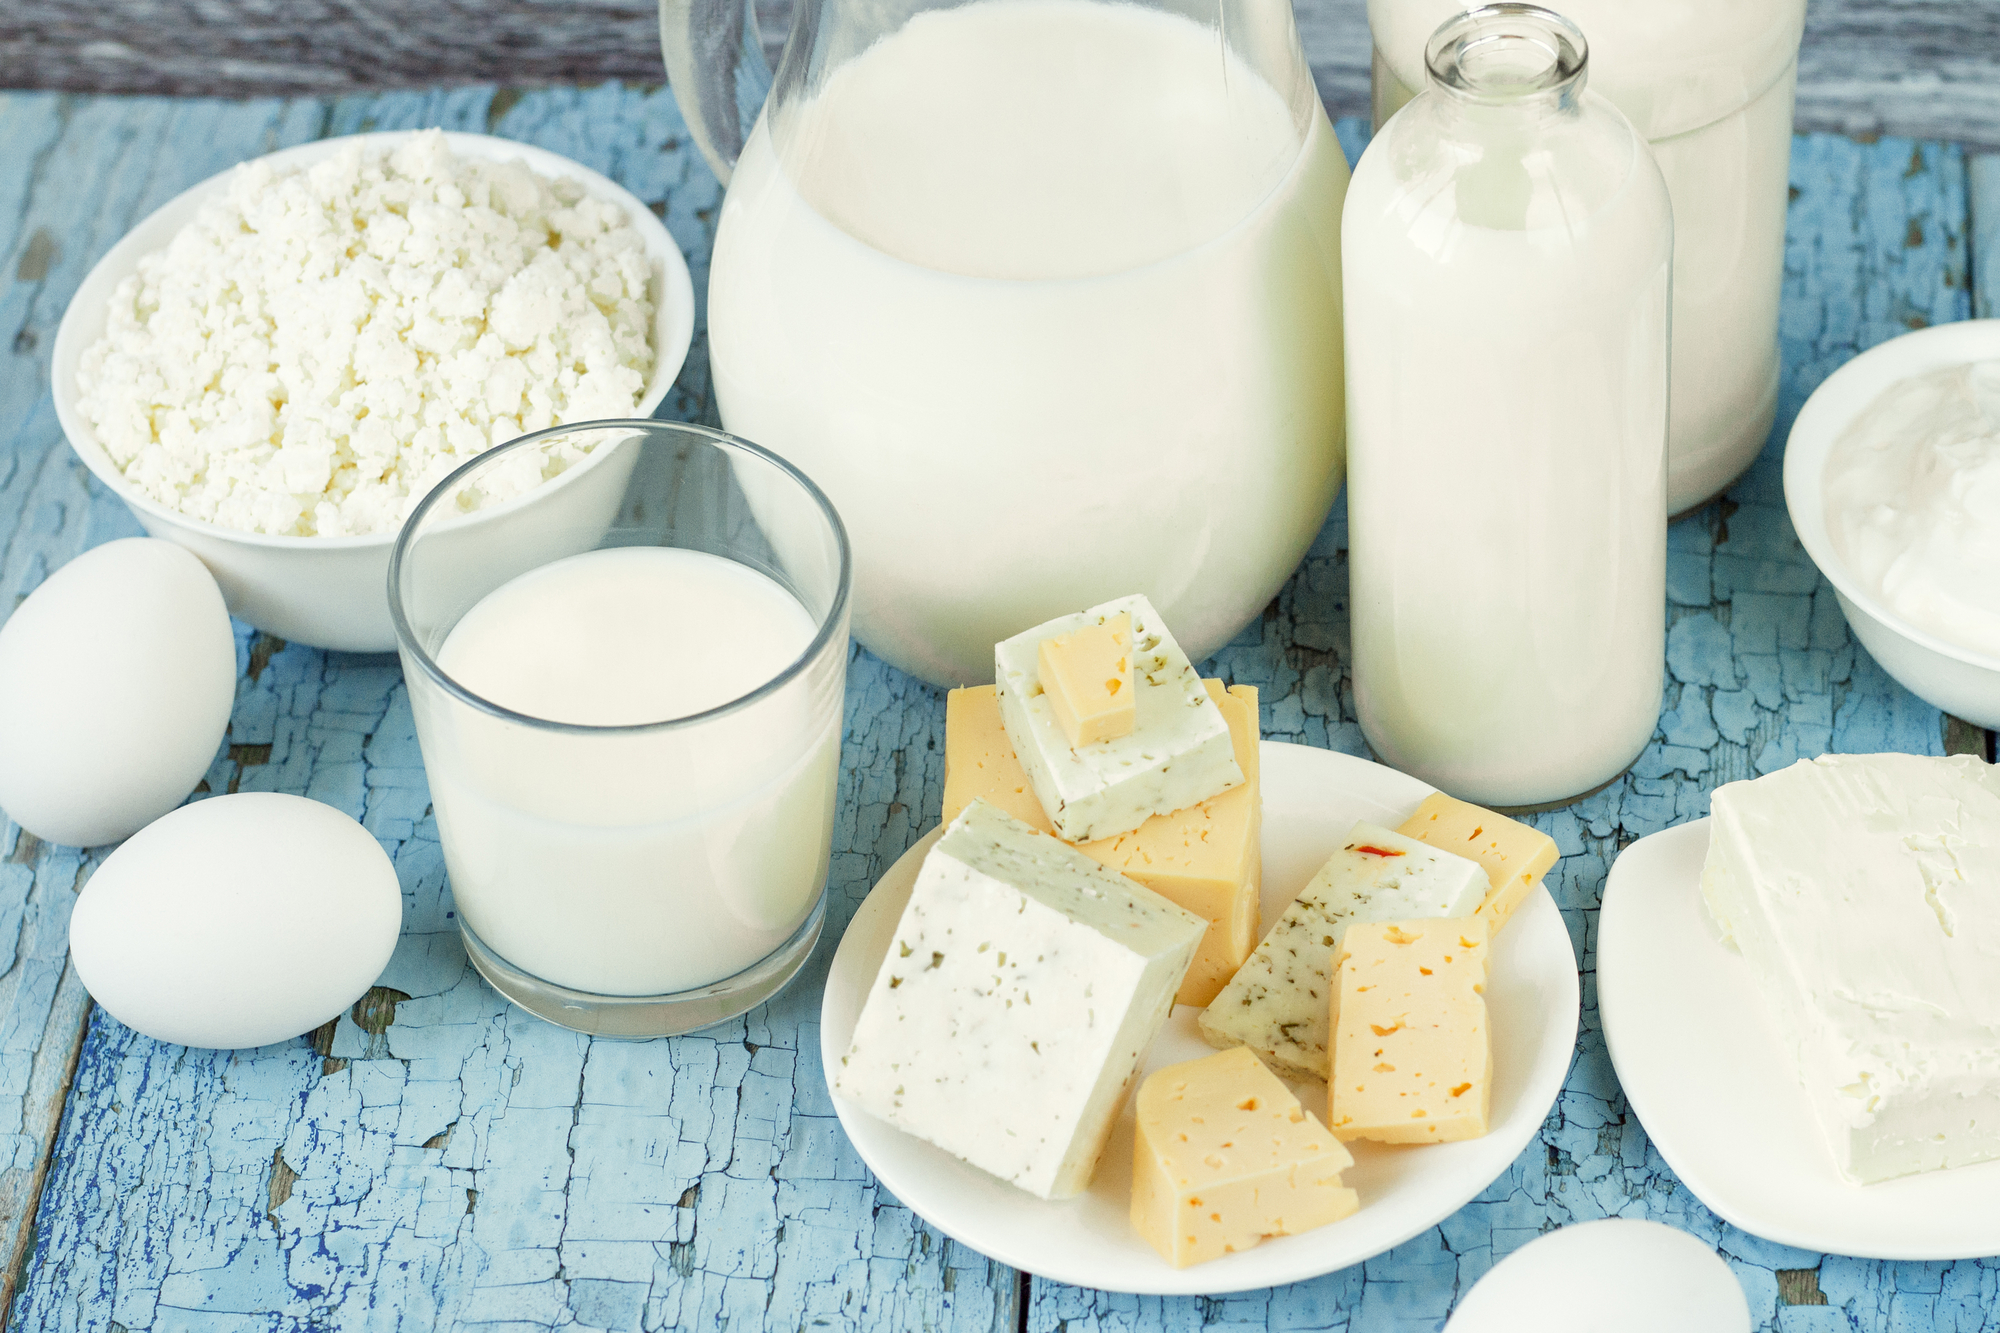 En marzo China importó 40,1% menos productos lácteos que en el mismo mes de 2021